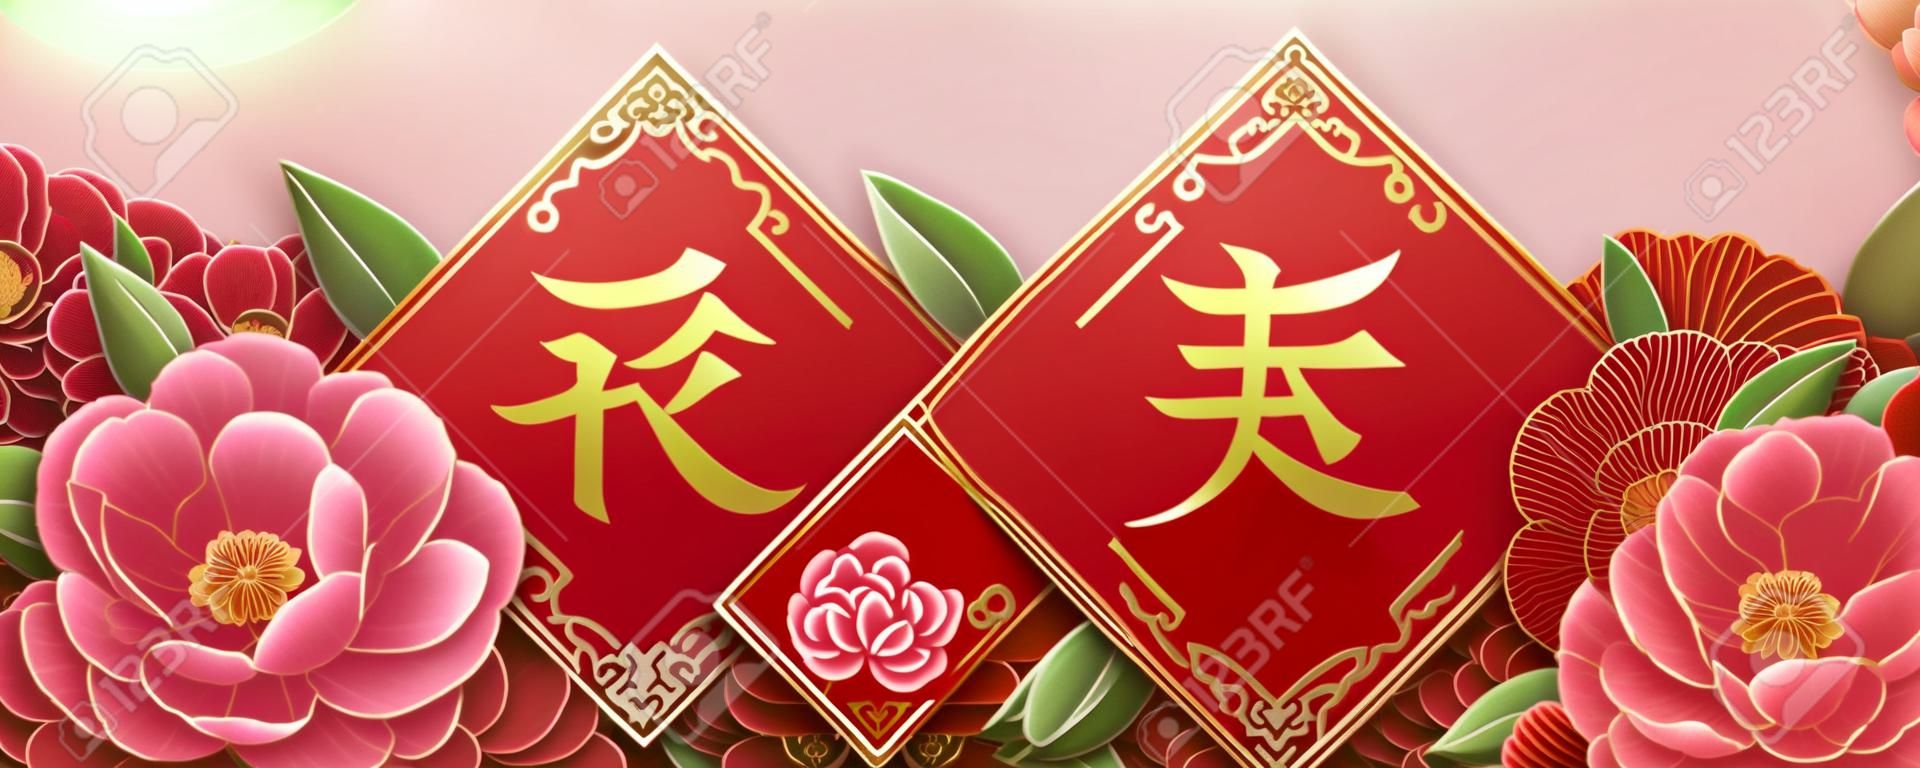 Projeto do ano lunar com flores bonitas da peônia, primavera escrita na palavra chinesa no meio